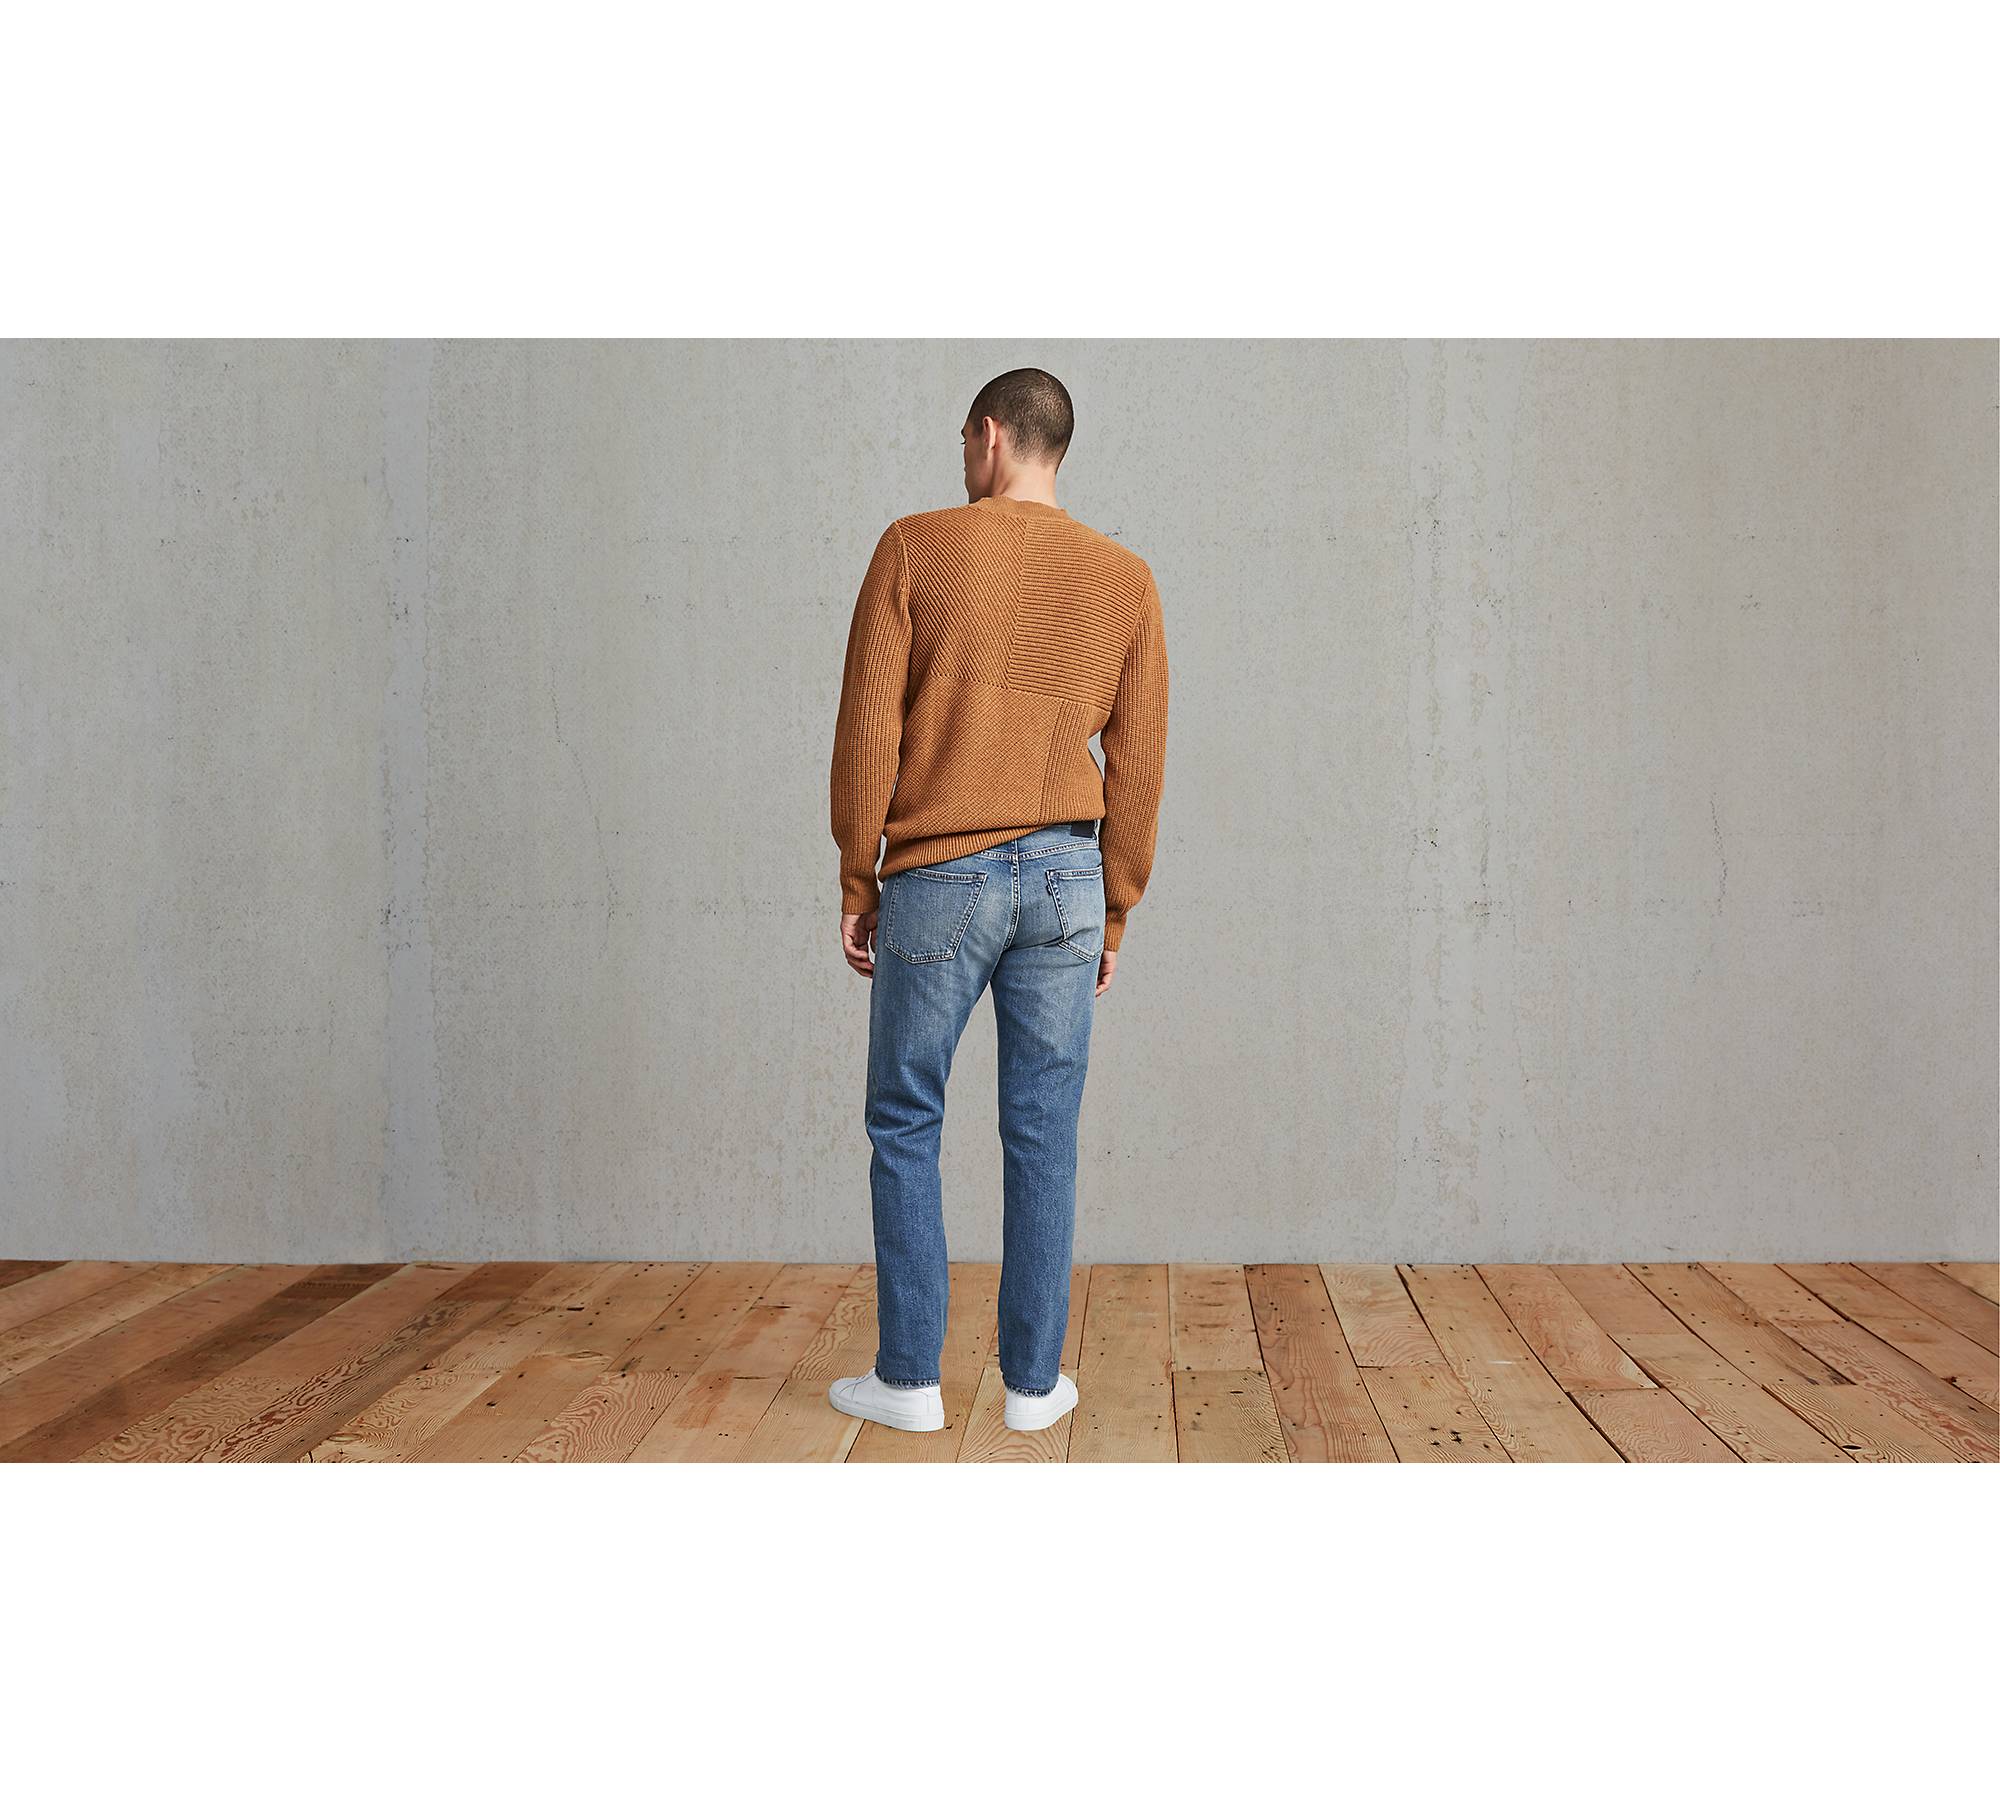 Tack Slim Men's Jeans - Medium Wash | Levi's® US